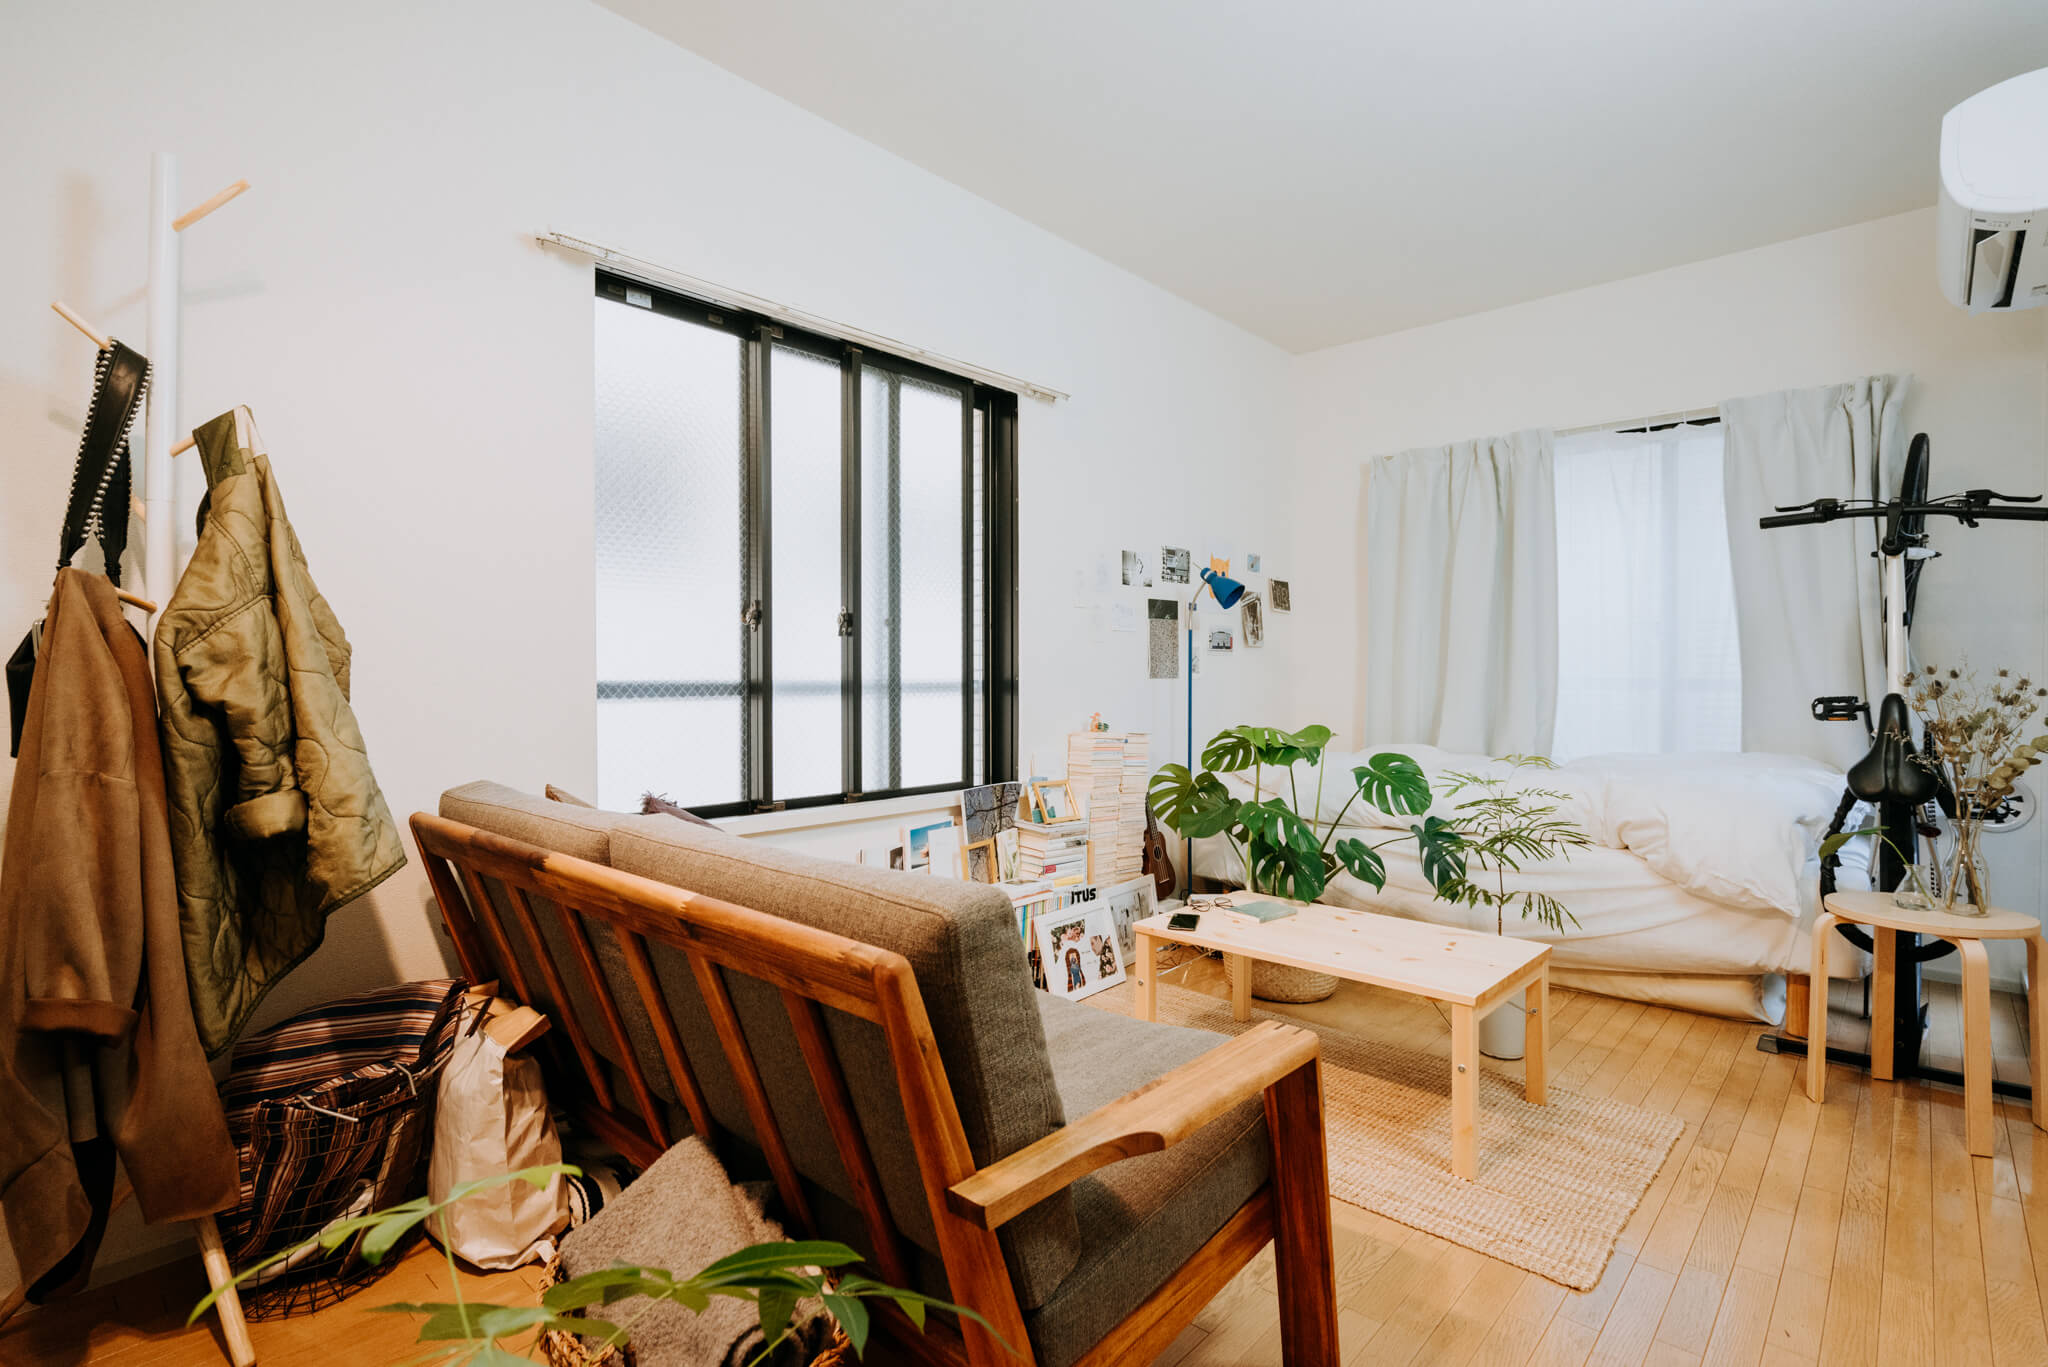 アイリストの神山エリカさんが東京で暮らしはじめたお部屋は、7.5畳のワンルーム。ラフにまとめられた中にもセンスが光る、居心地の良い空間です。